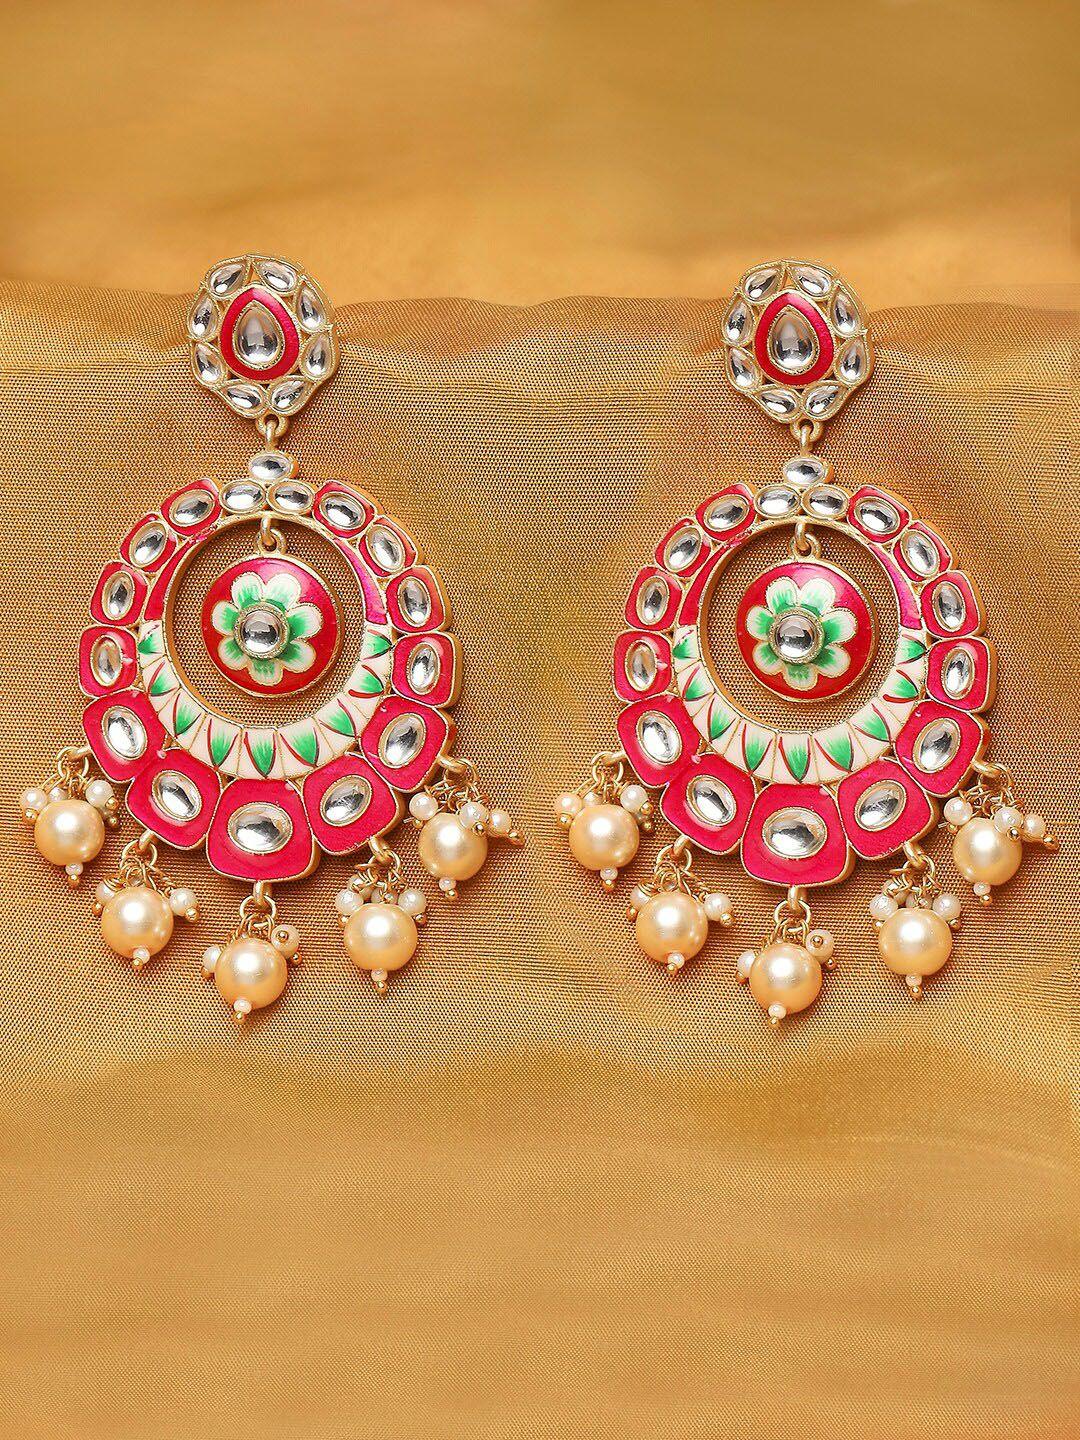 oomph pink & green enamelled floral chandbalis earrings